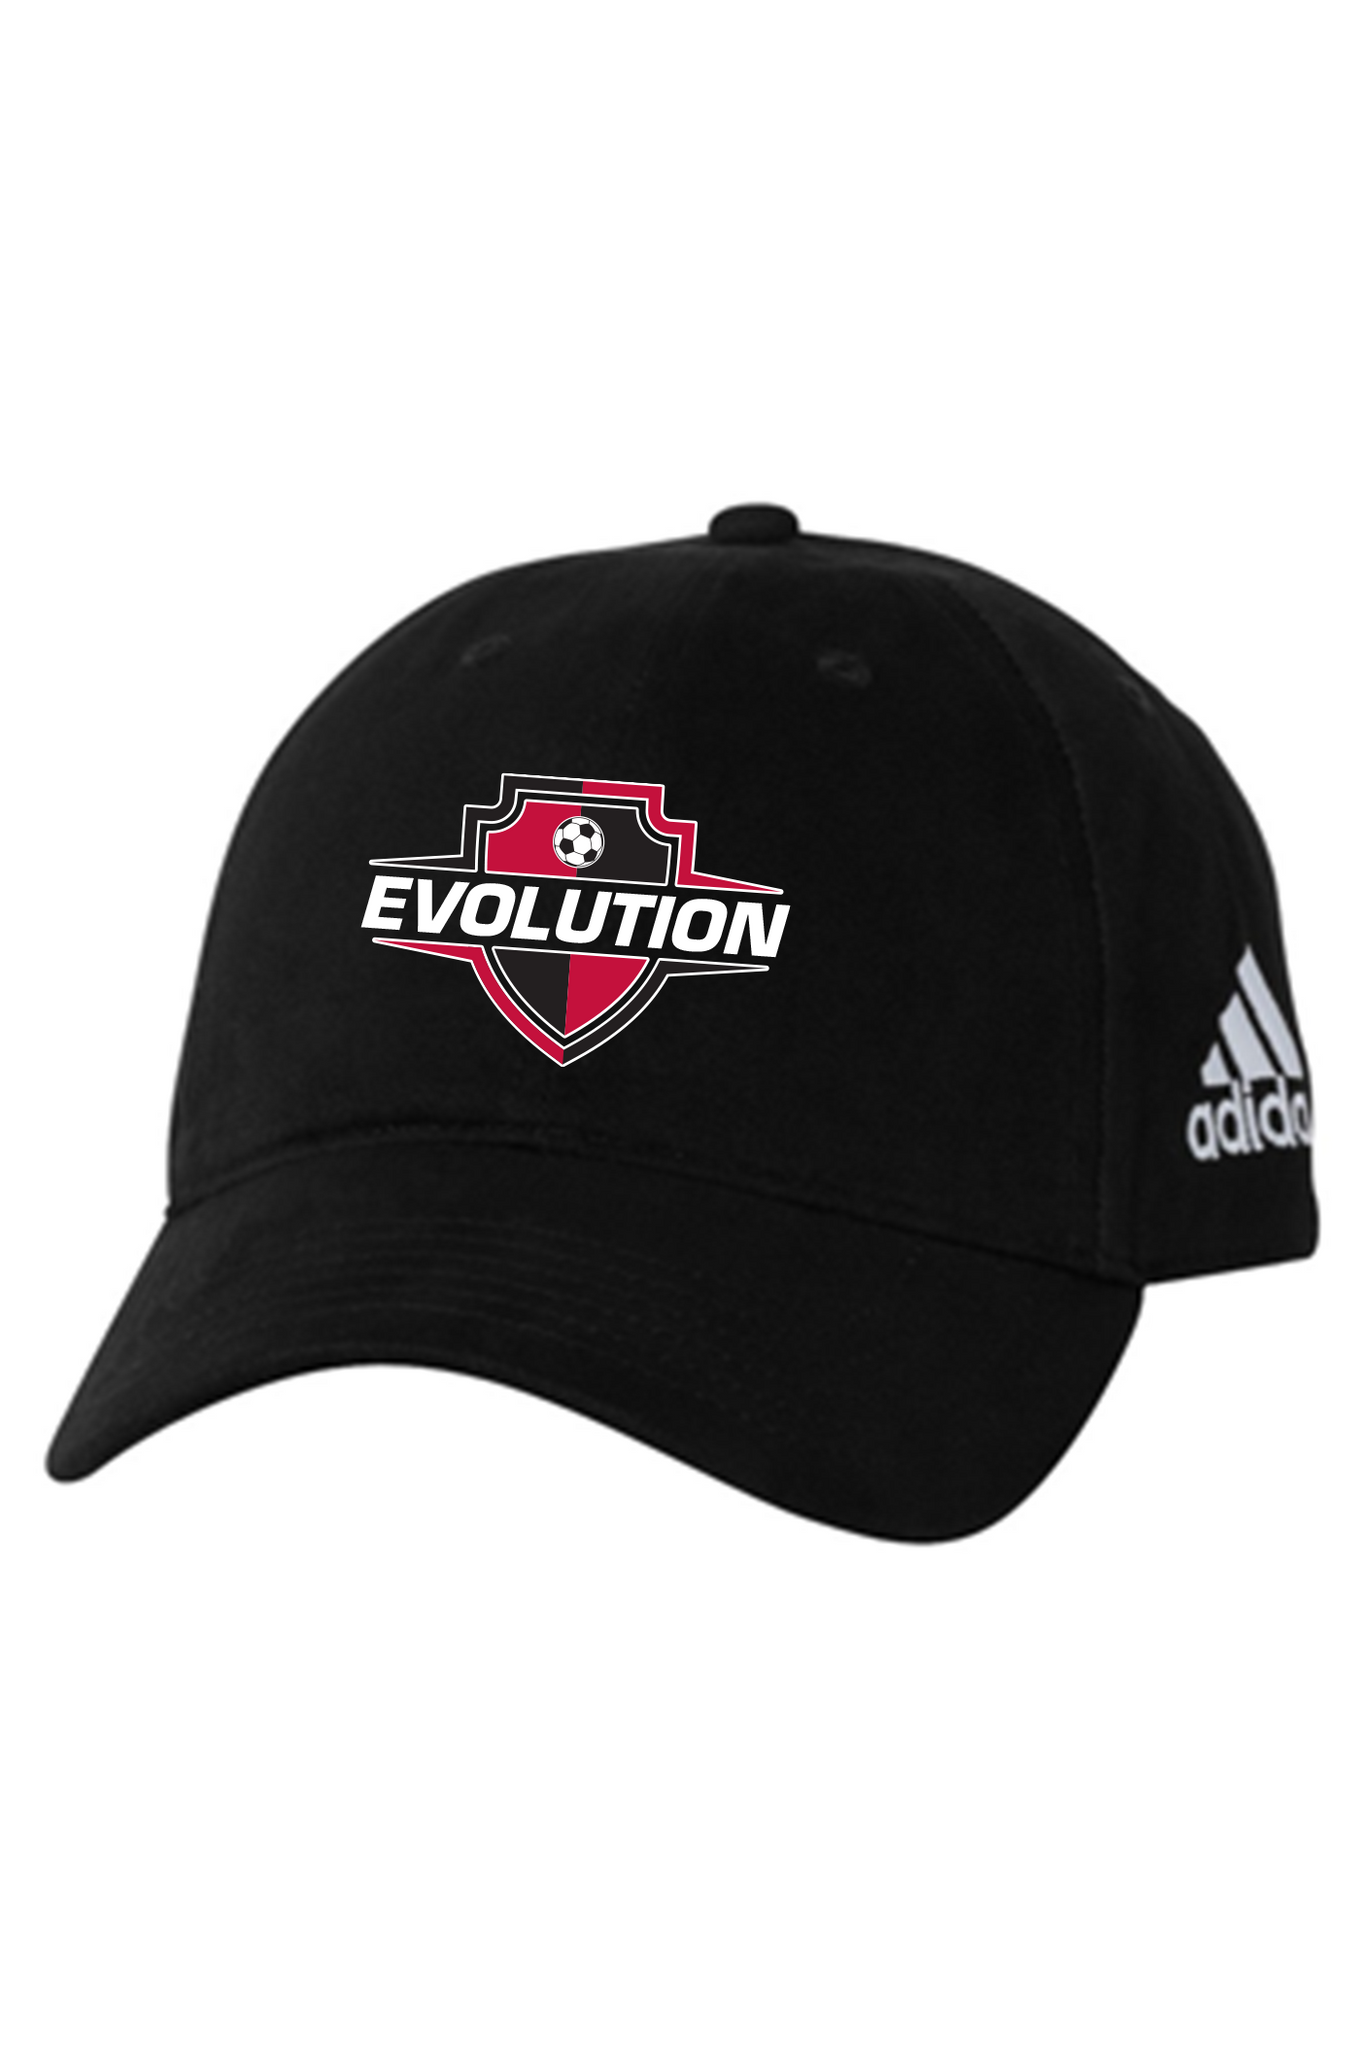 Delta Evolution Hats